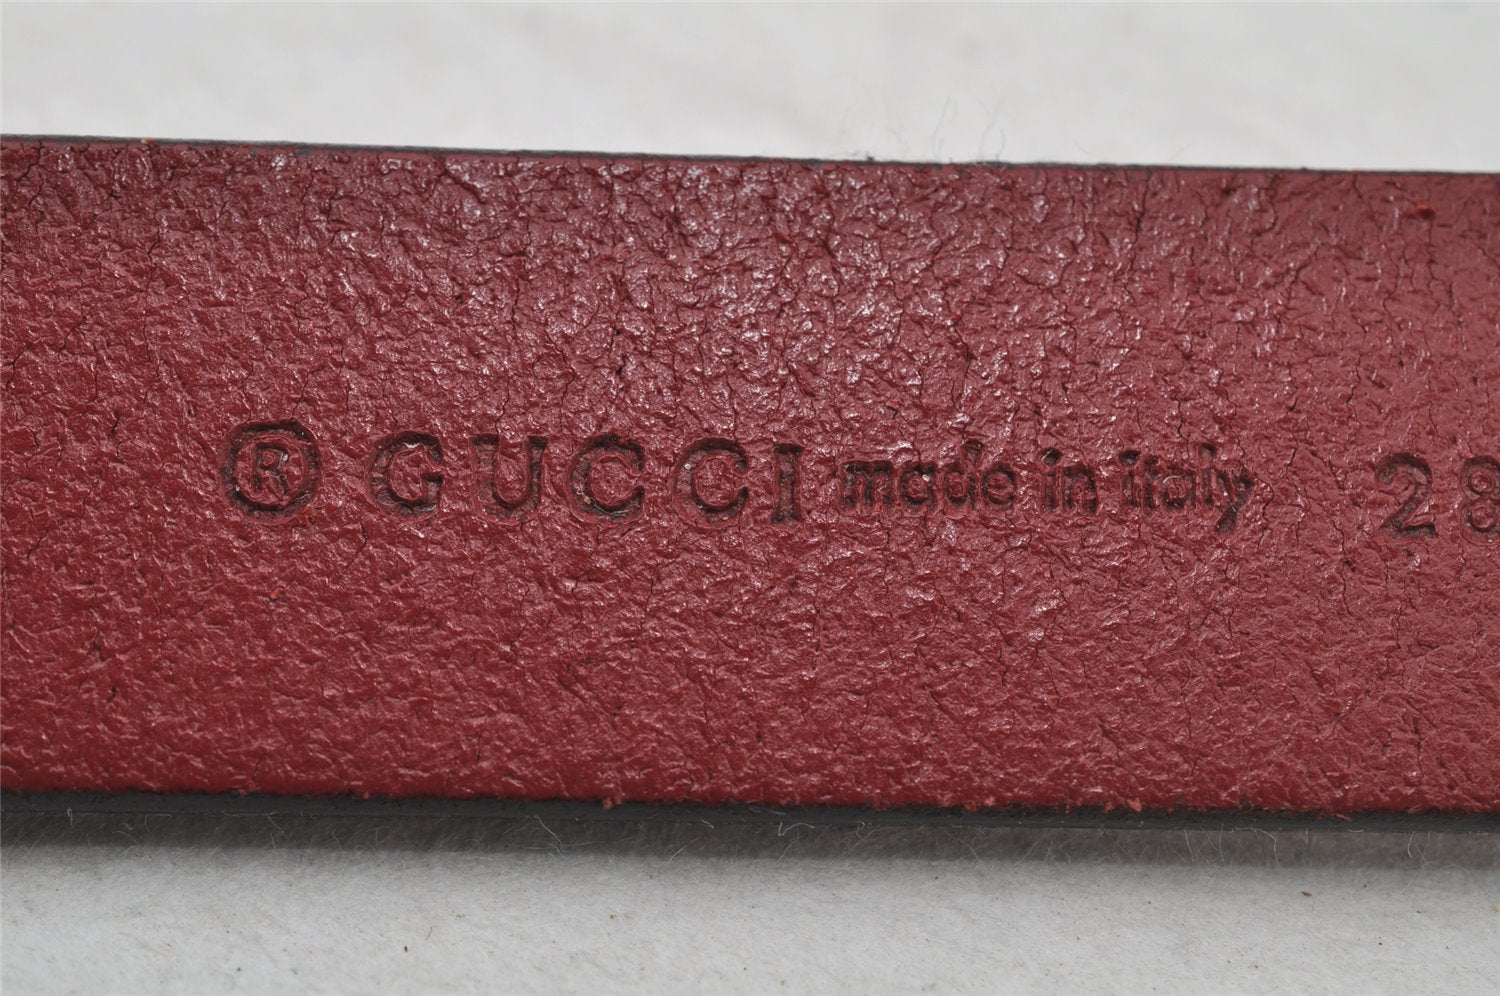 Authentic GUCCI Double G Vintage Belt Leather 80cm 31.5